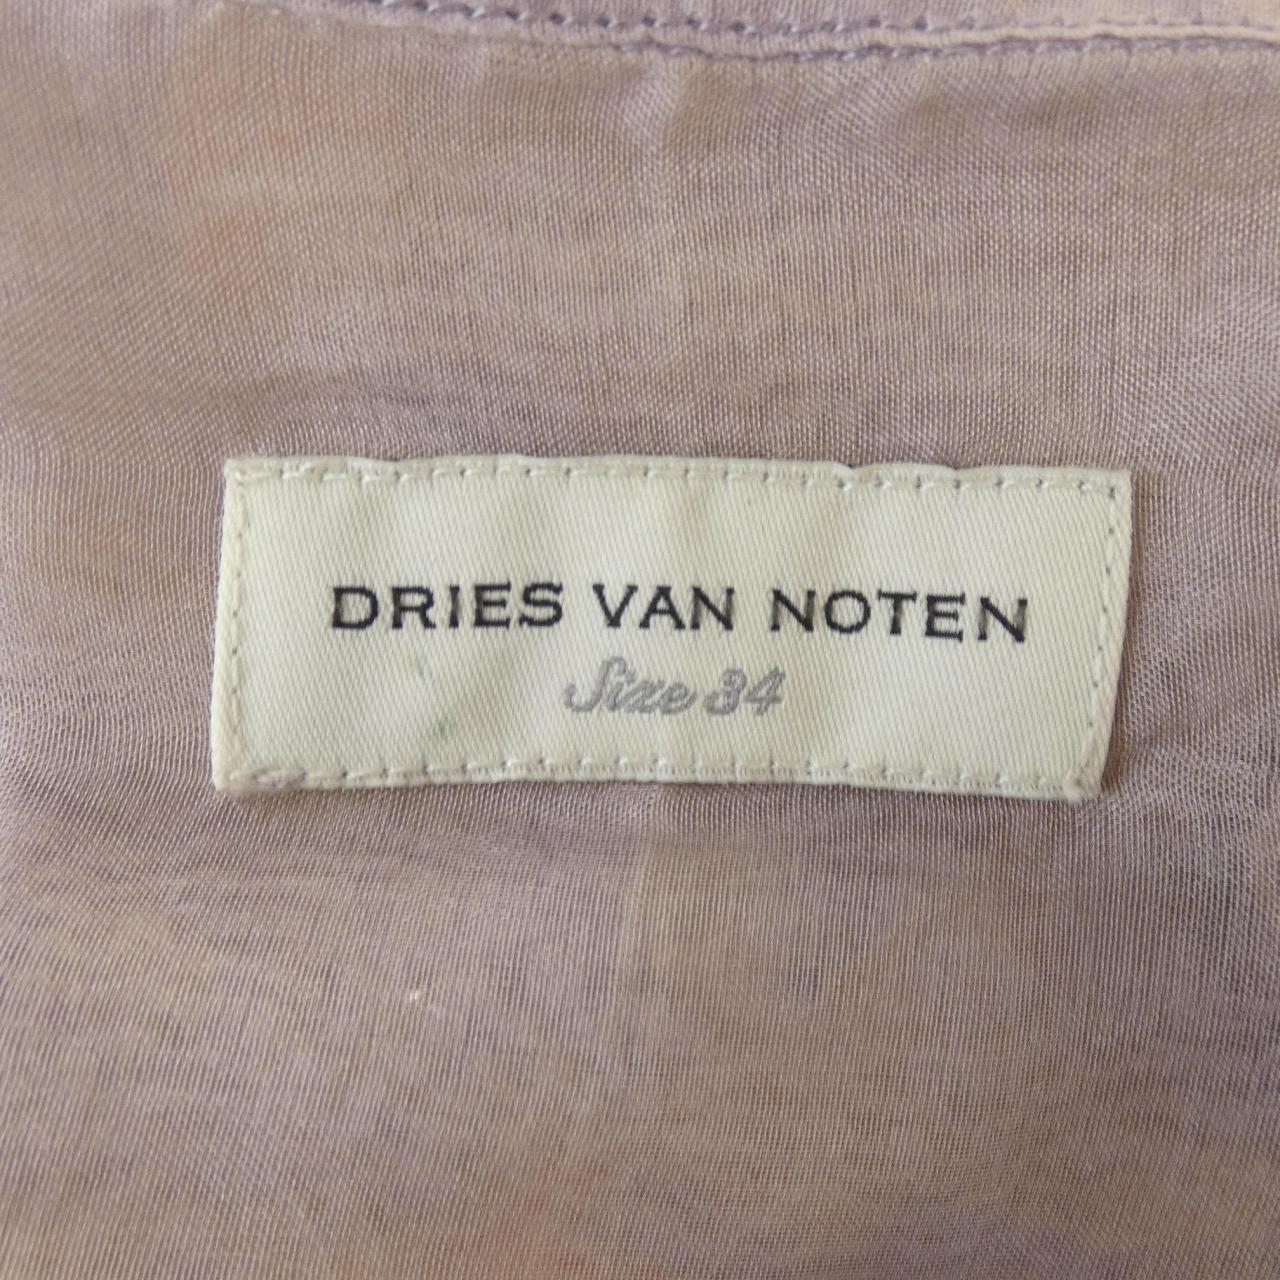 DRIES VAN NOTEN德賴斯·範諾頓 (Dries Van Noten) 襯衫